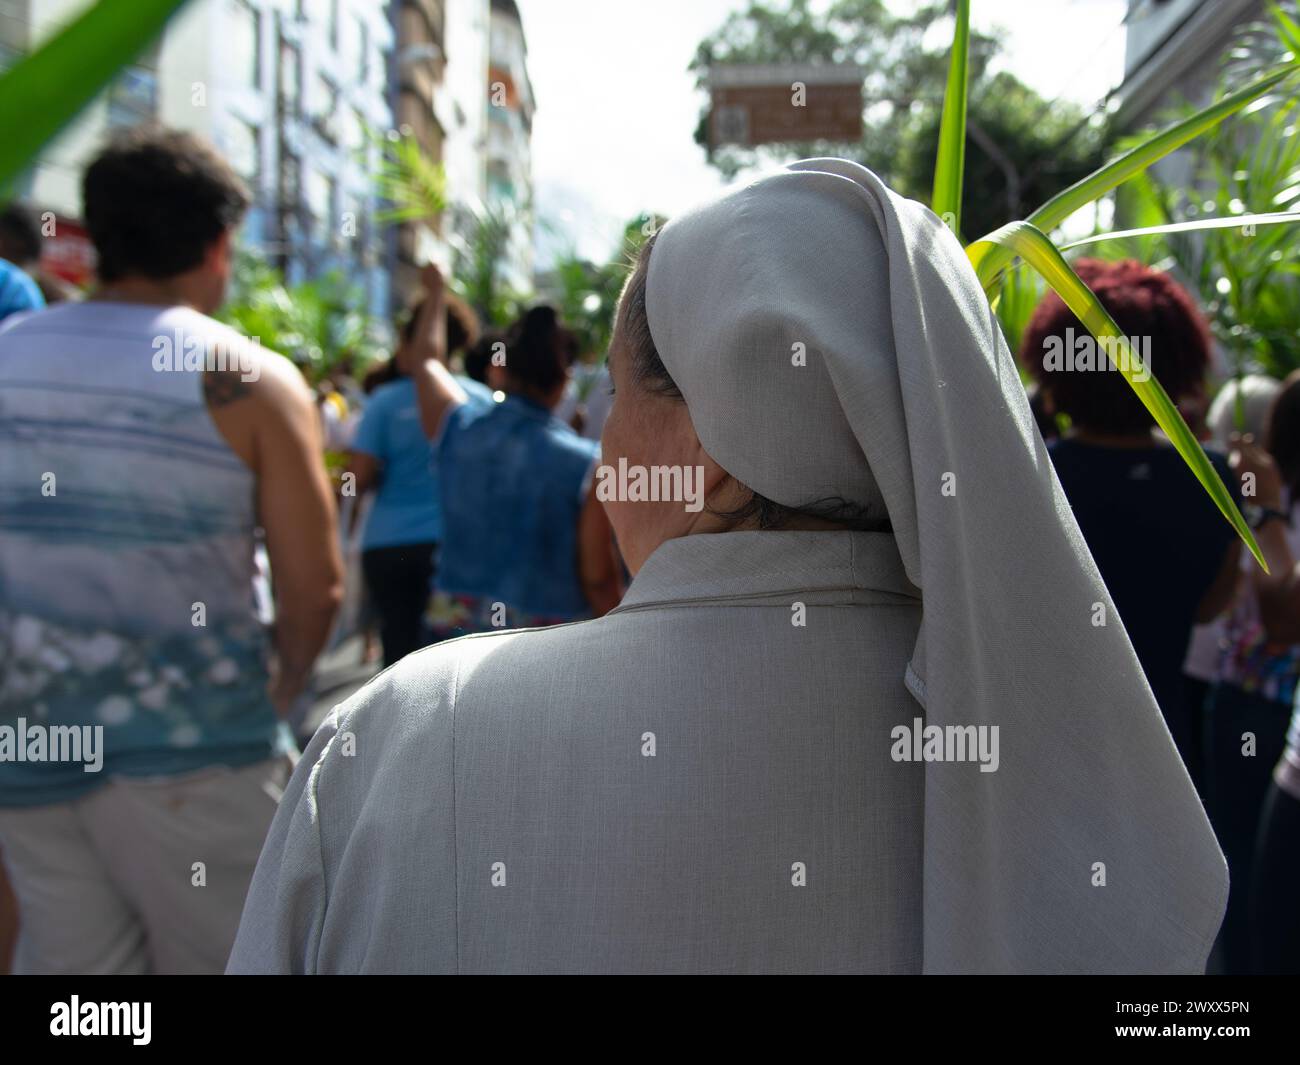 Salvador, Bahia, Brésil - 14 avril 2019 : on voit des catholiques marcher et prier pendant la célébration du dimanche des Rameaux dans la ville de Salvador, Bahia. Banque D'Images